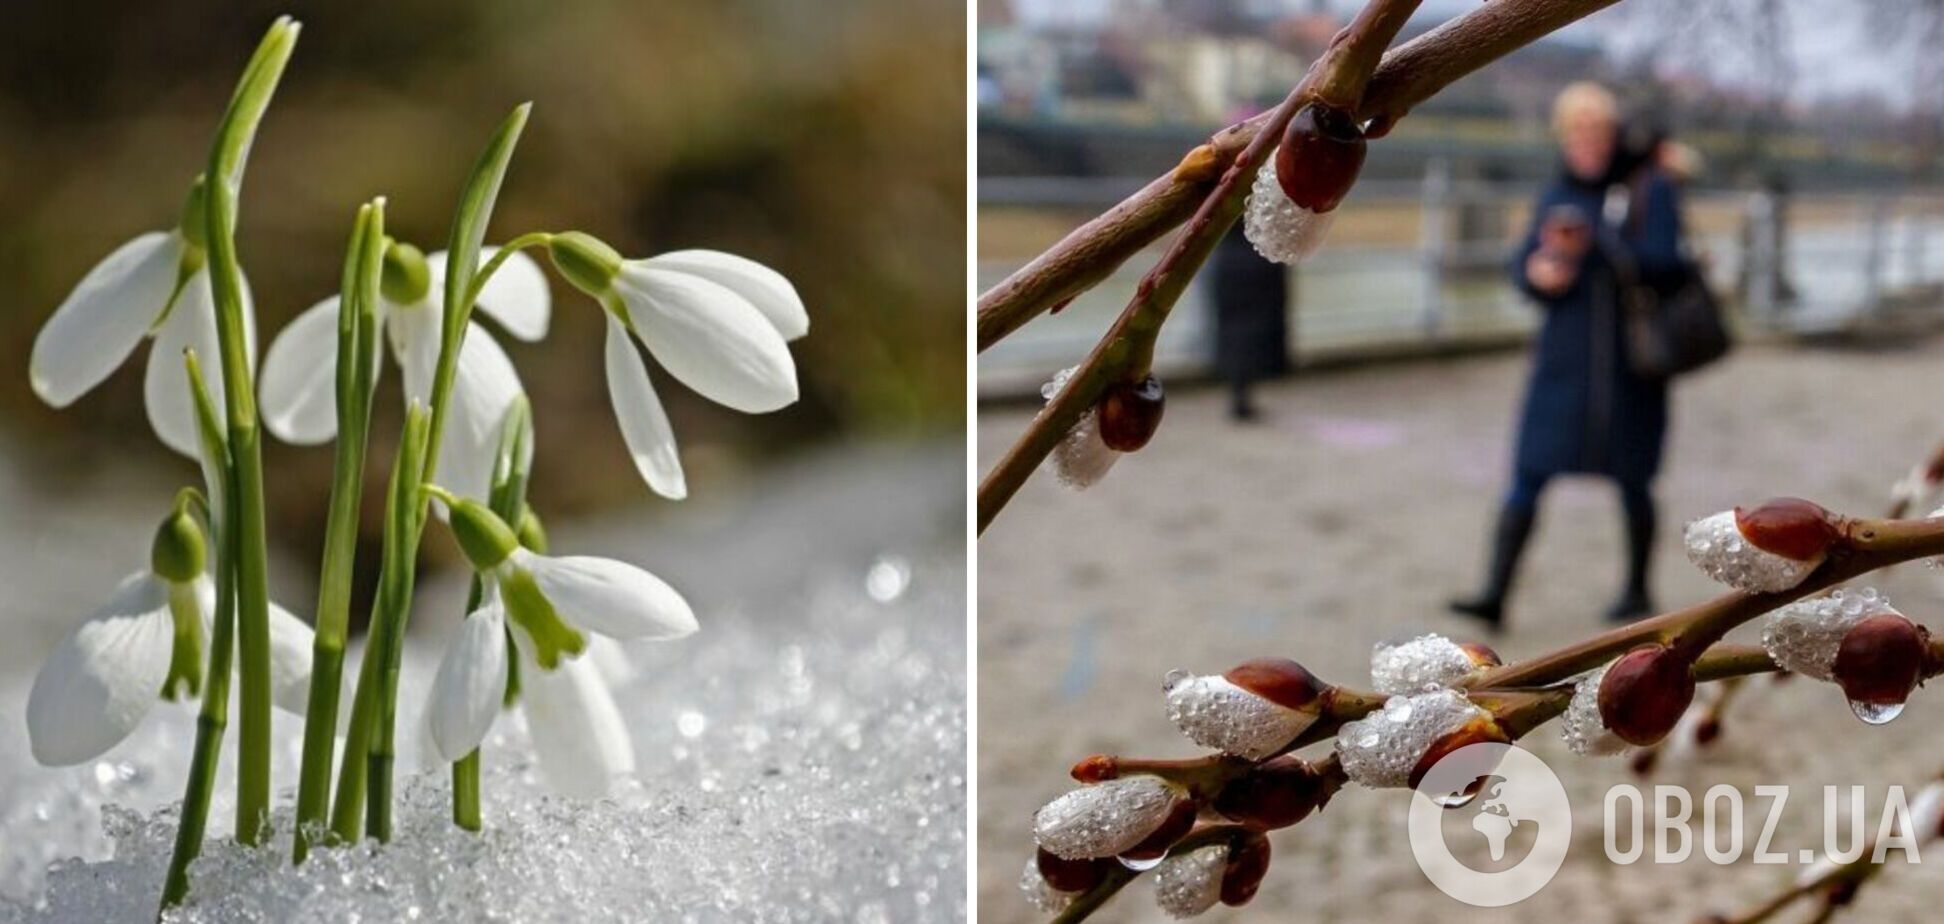 Март будет теплее обычного: синоптики рассказали о погоде в первый месяц весны